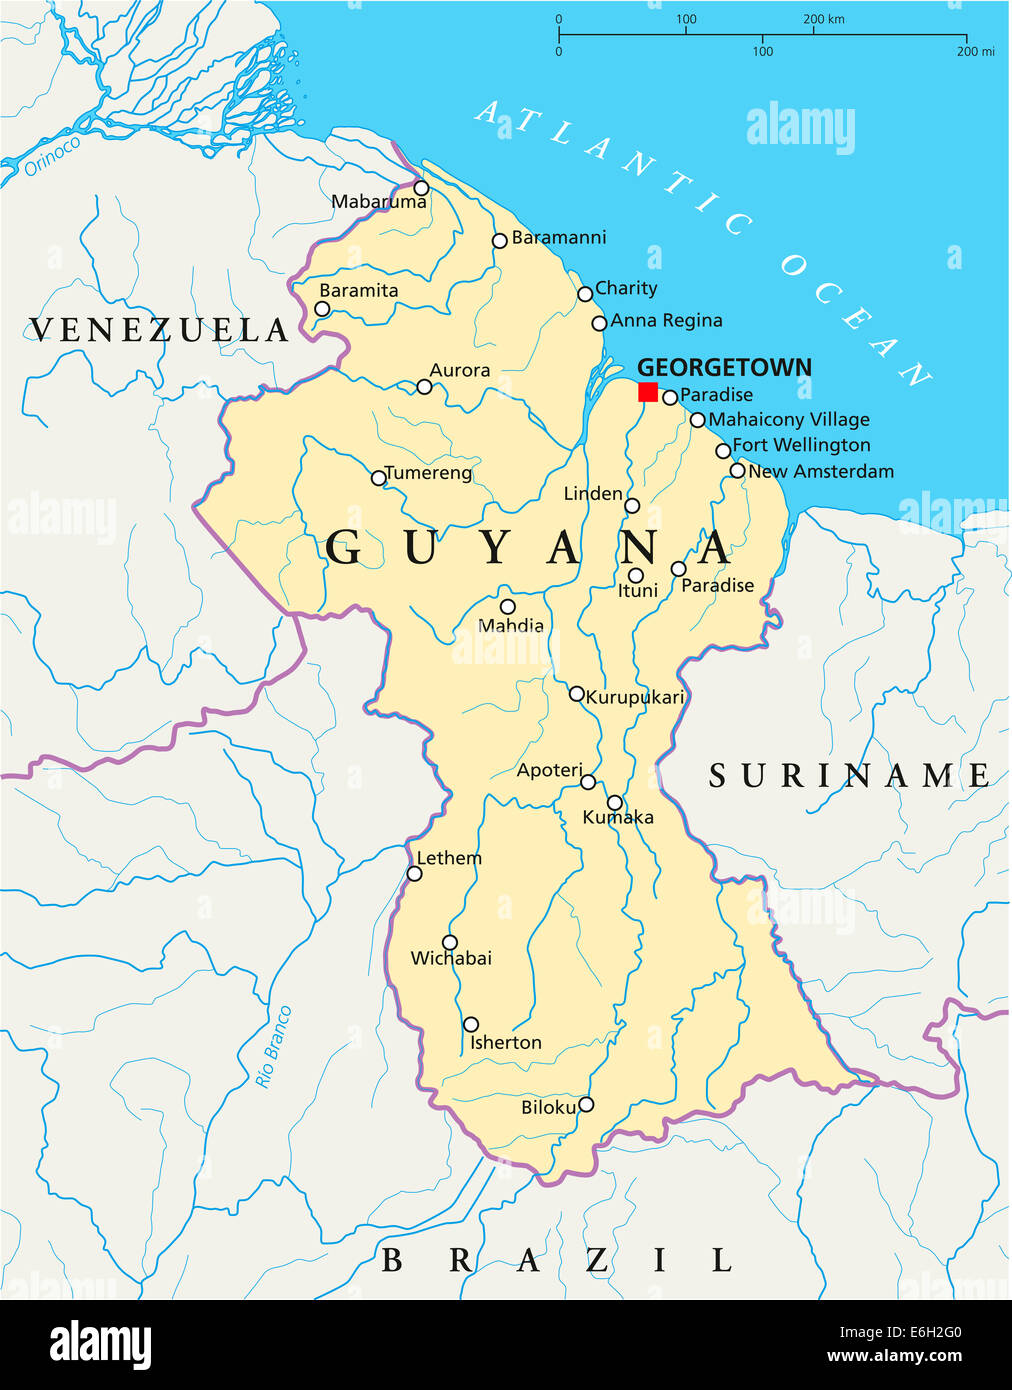 georgetown capitale de guyana